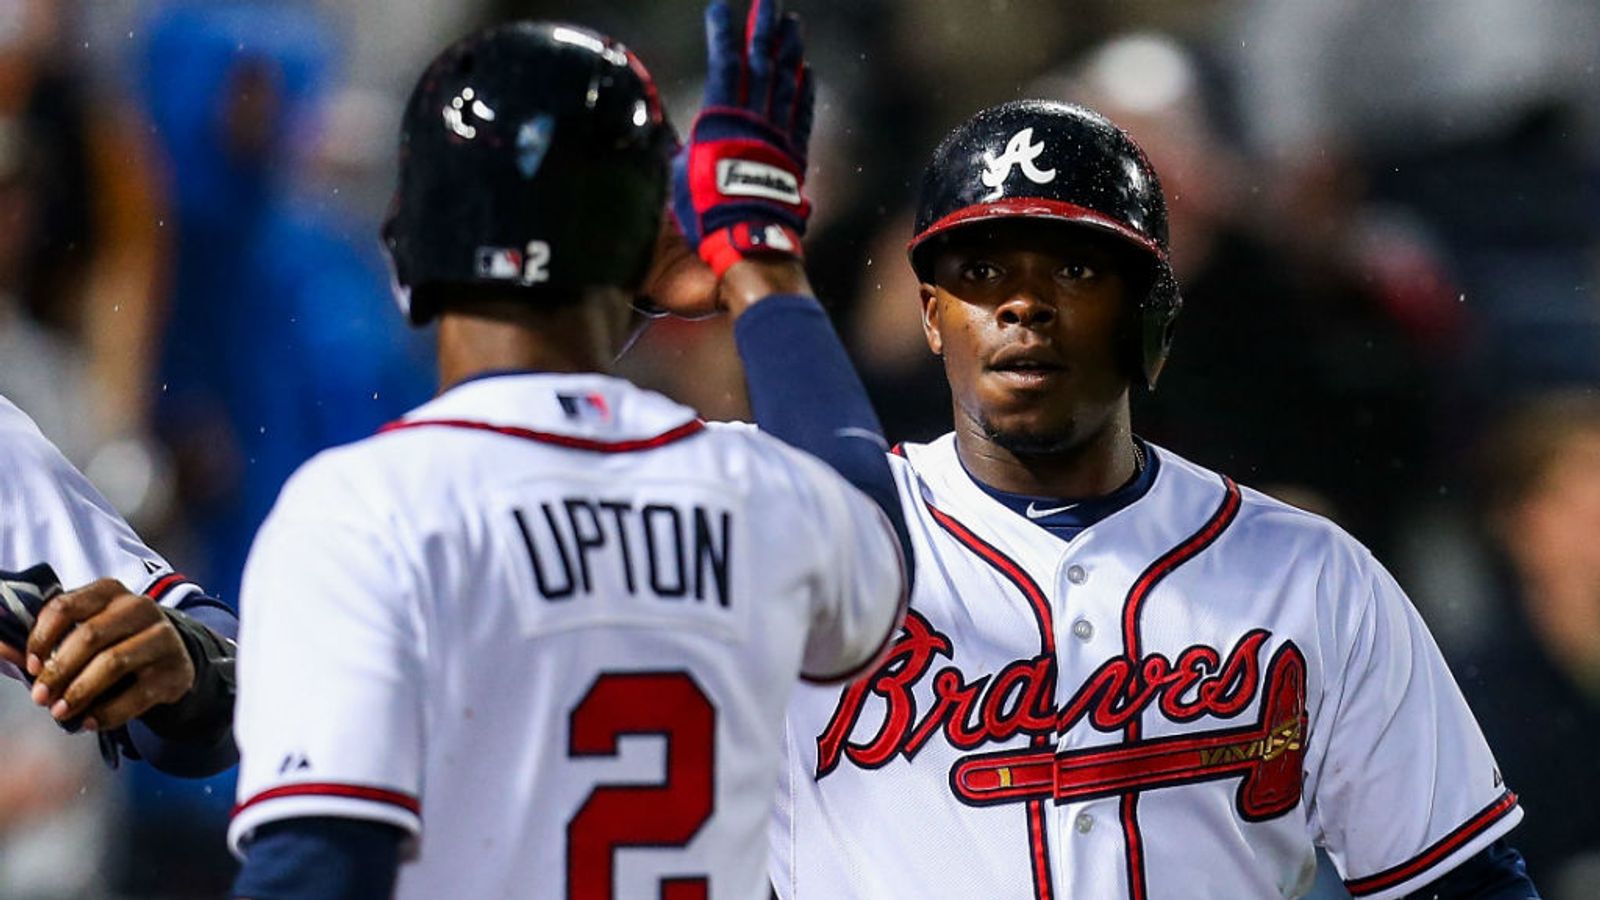 MLB: BJ and Justin Upton both hit home runs to help Atlanta Braves